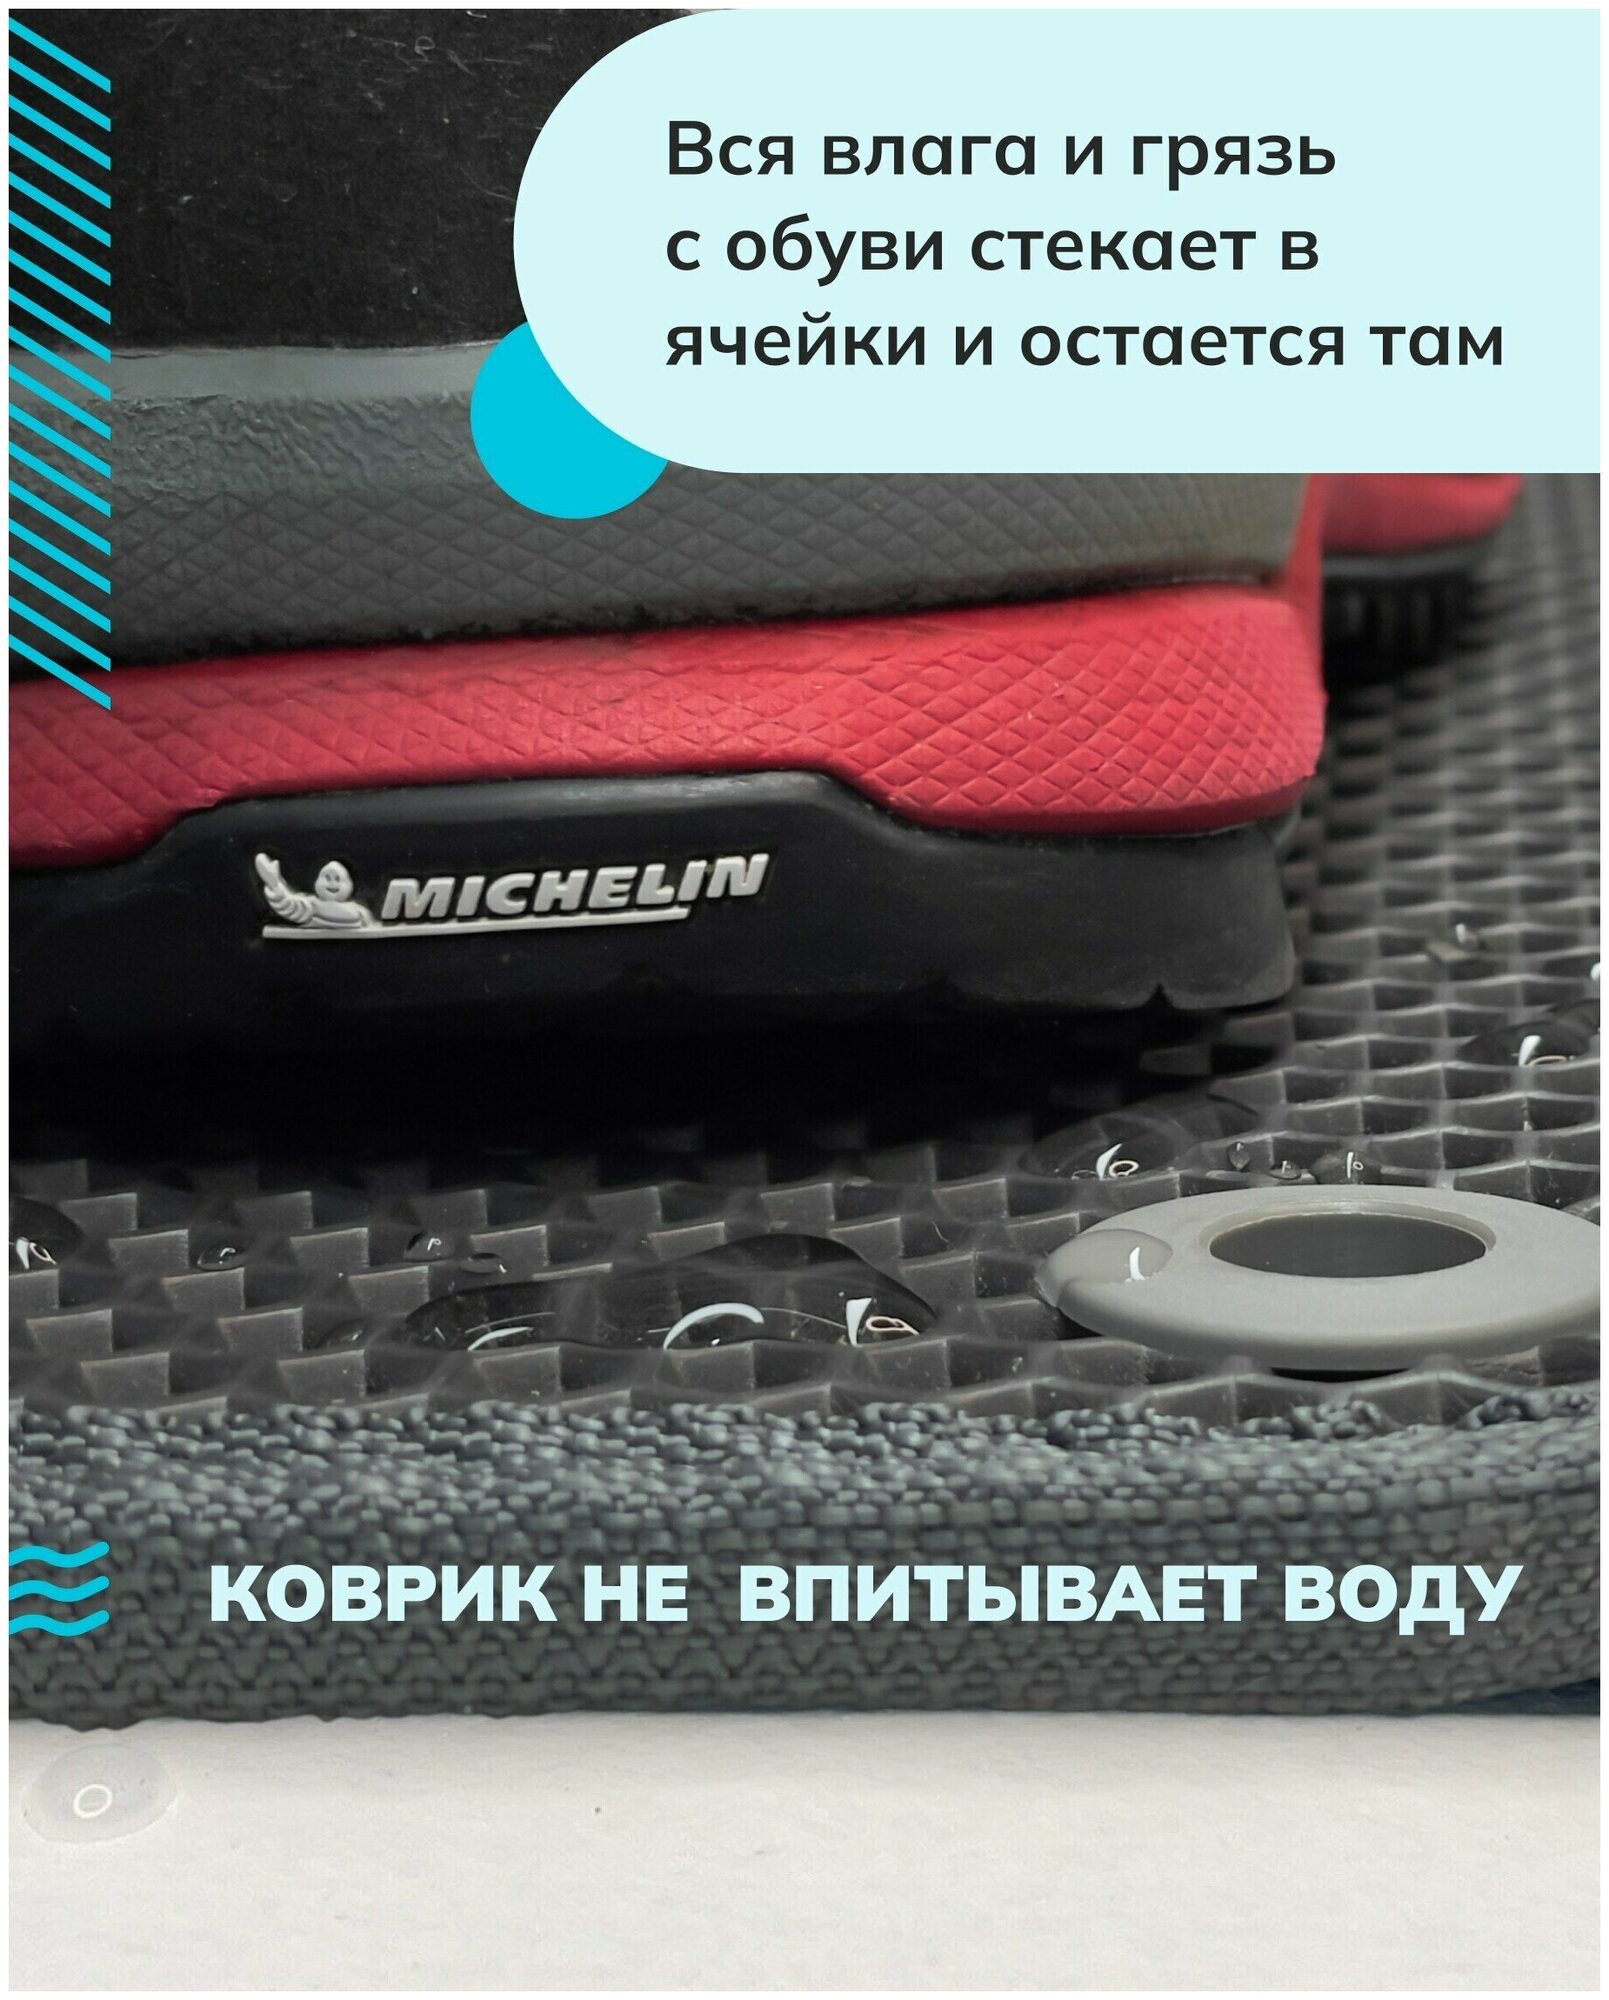 Грязезащитный придверный резиновый коврик в прихожую из EVA для обуви, для ванной, туалета, 0,85 х 0,85 м, темно-серый сота - фотография № 3